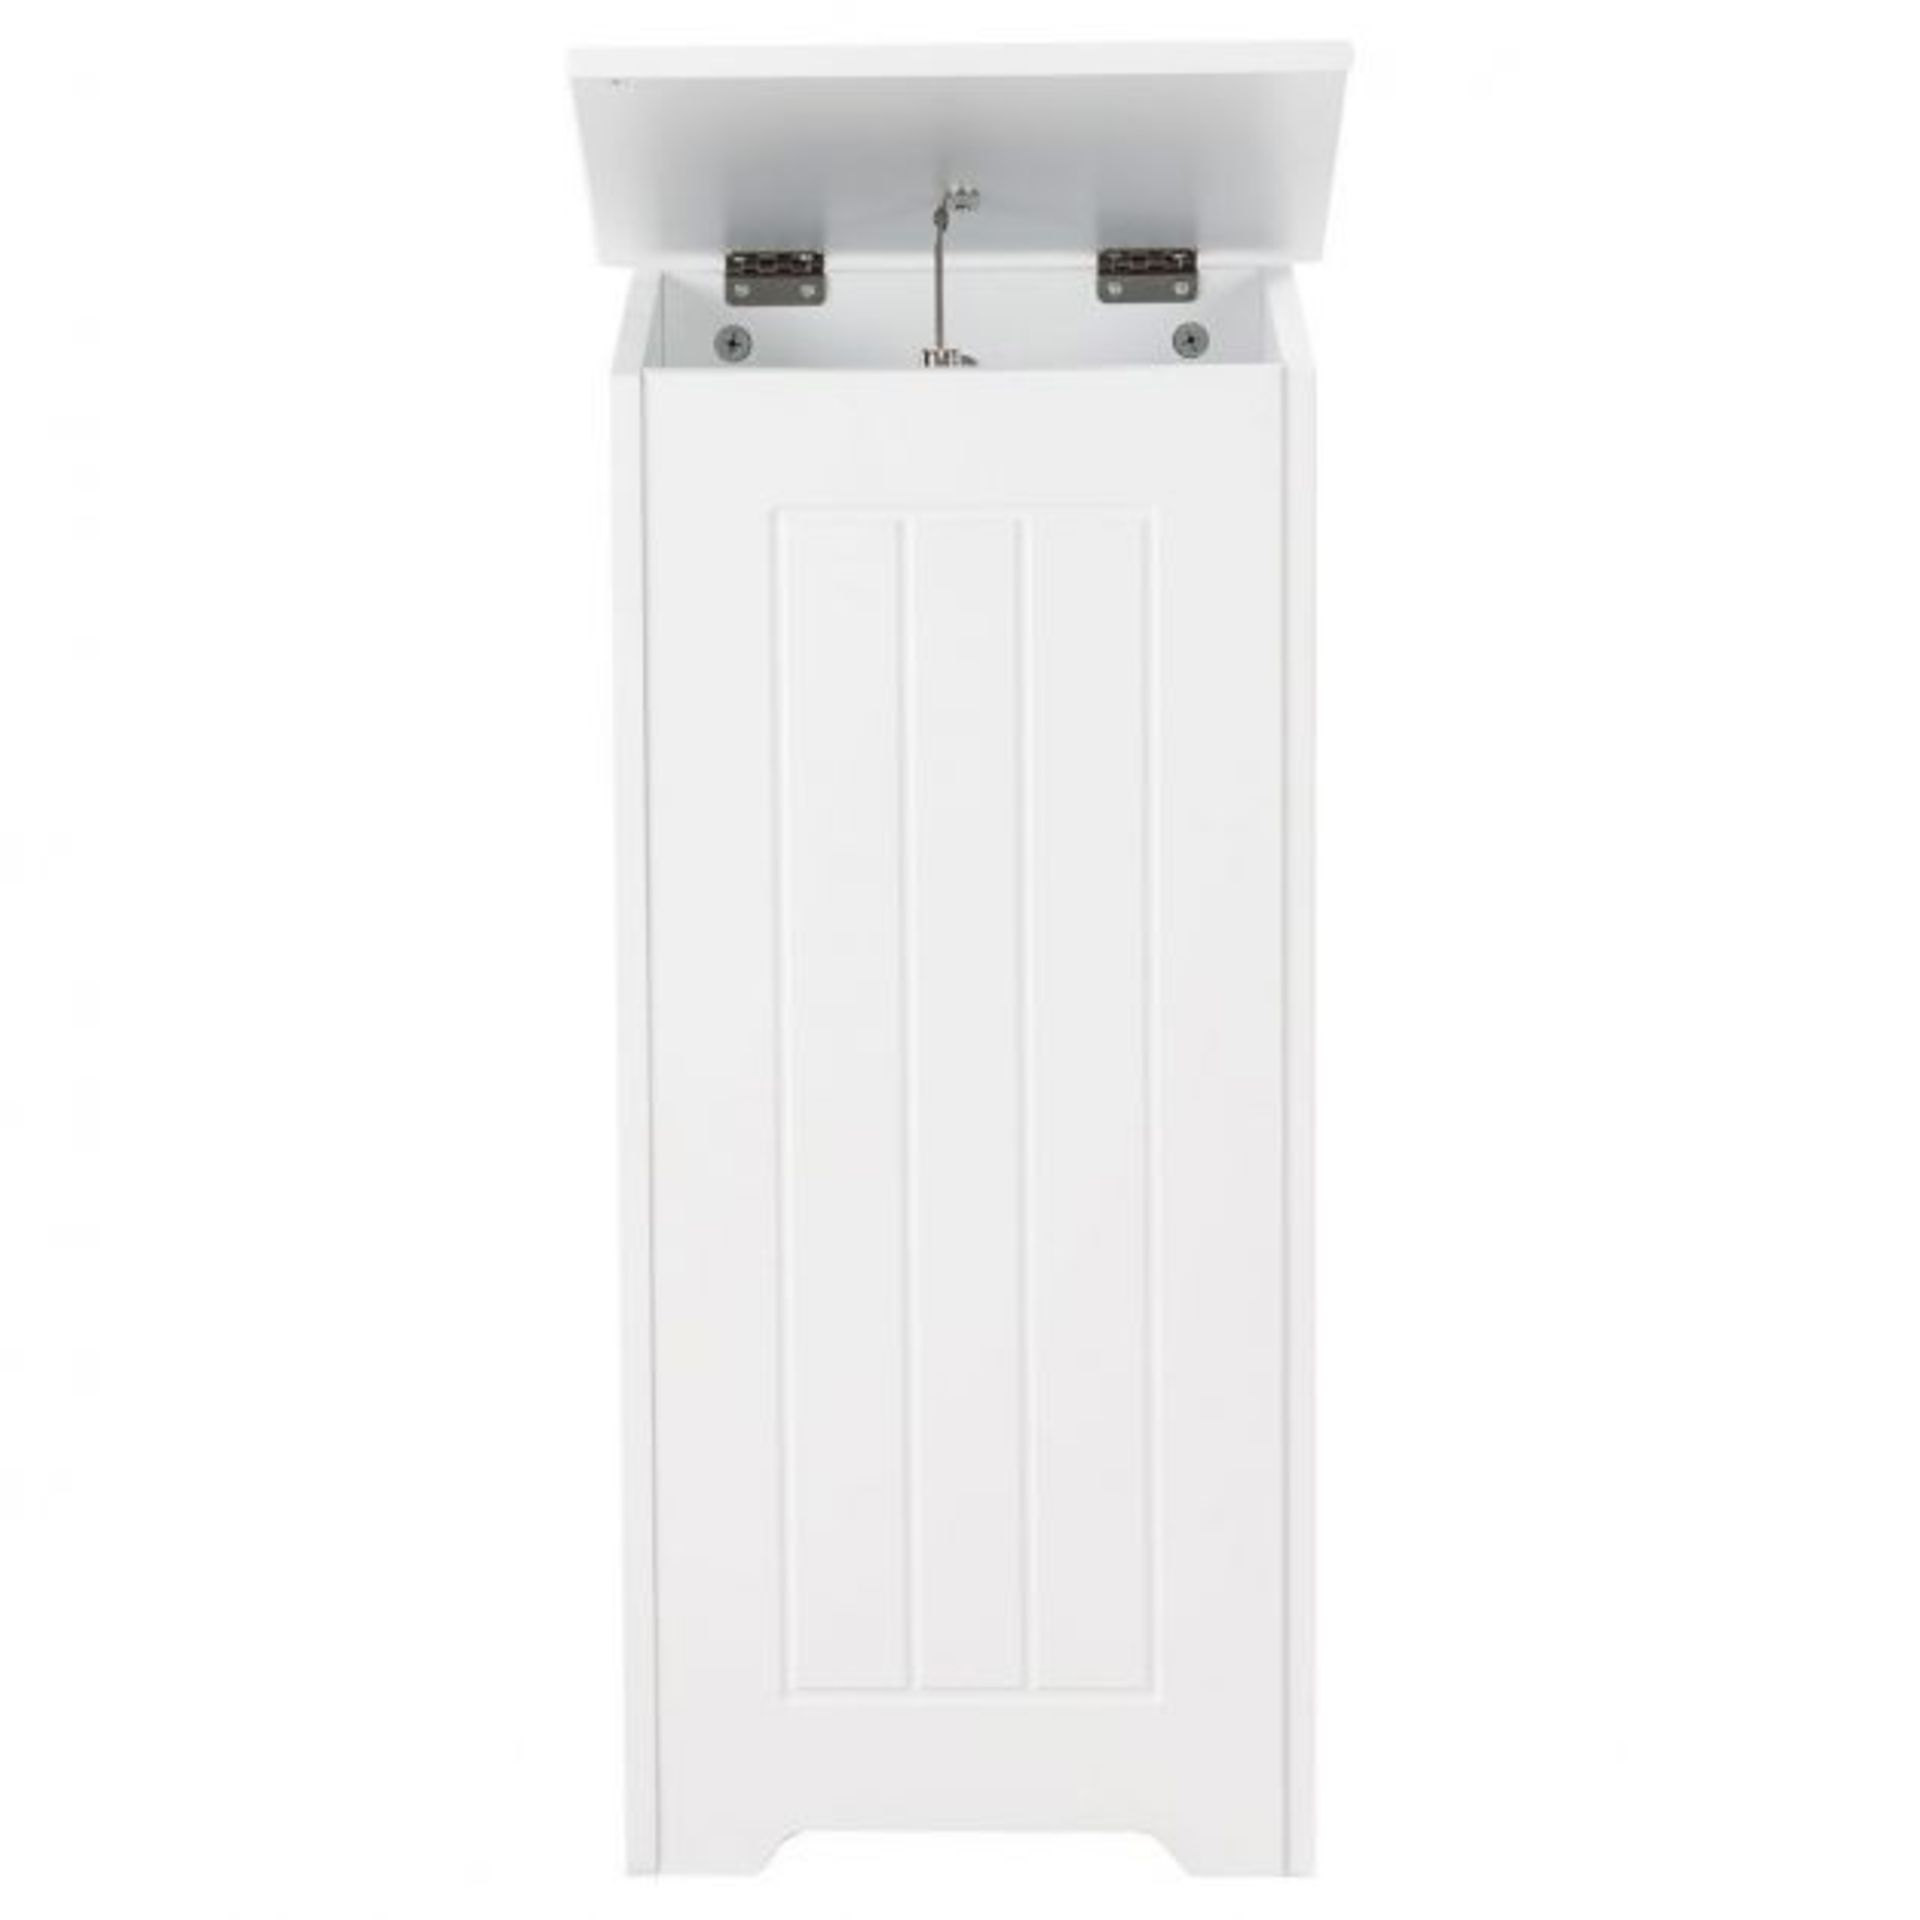 White Wooden Laundry Bin. - ER25. Modern white laundry bin ideal for a bedroom or bathroom